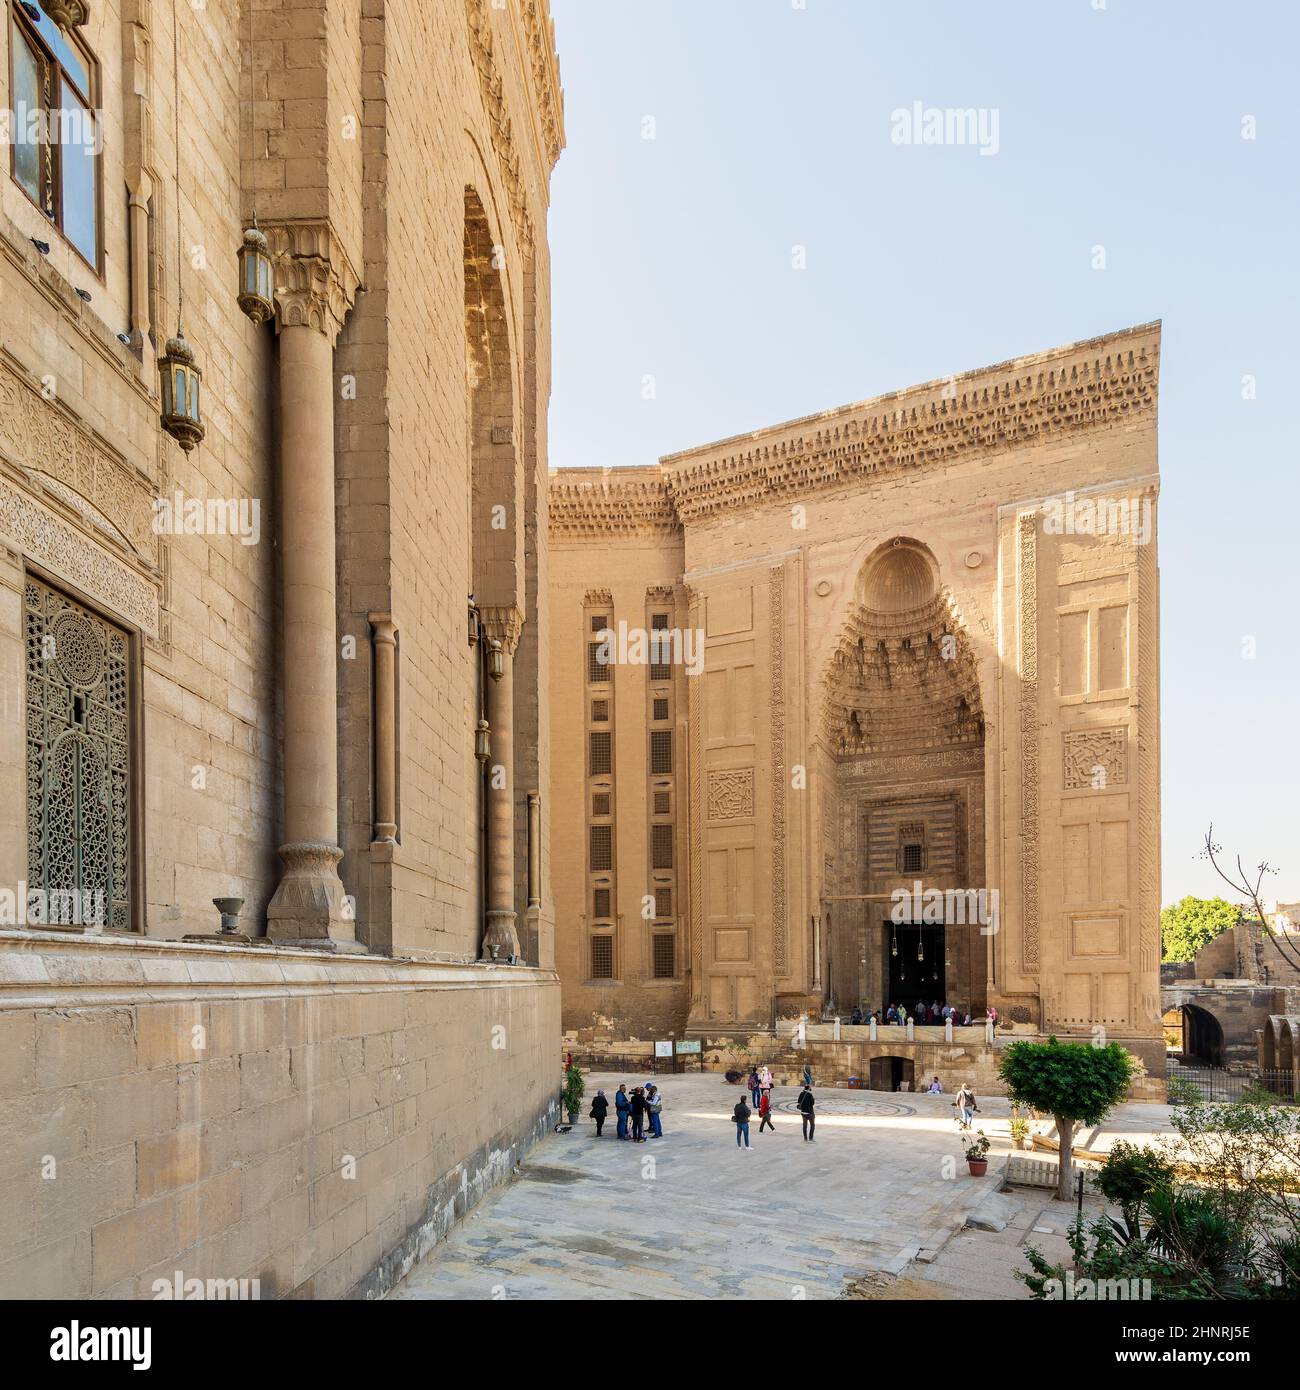 Facade of Mamluk era Mosque and Madrassa of Sultan Hassan, with side facade of royal era Al Rifai Mosque, Cairo, Egypt Stock Photo